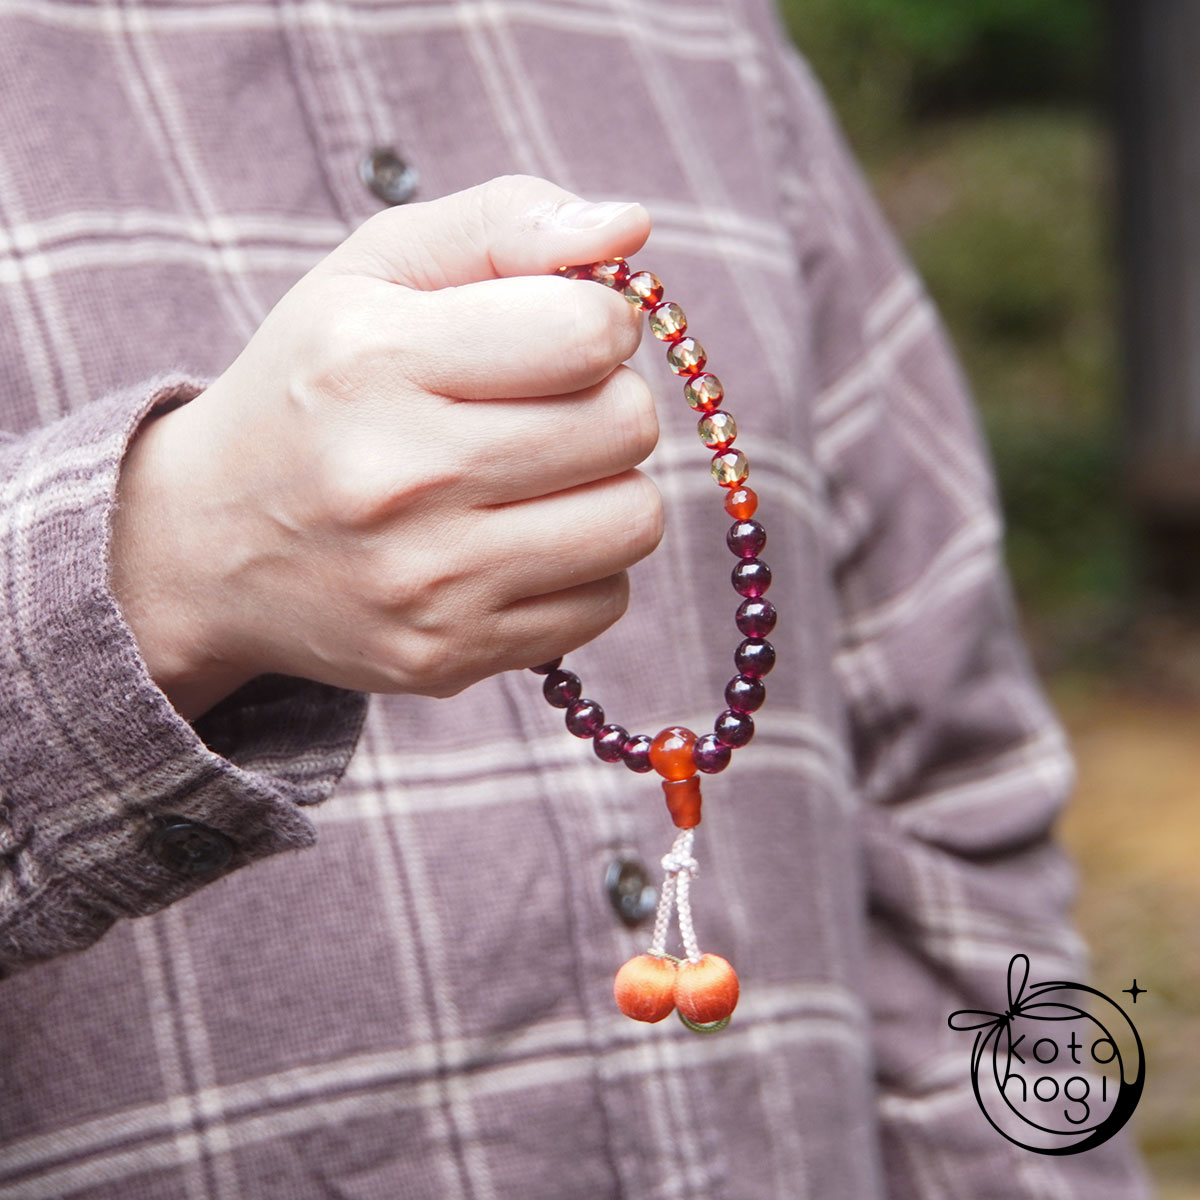 お守り数珠「ひとえ」 天然石 アンバー ロードライトガーネット 赤瑪瑙 略式数珠 一連【健康・女性の健康・女性の循環】画像